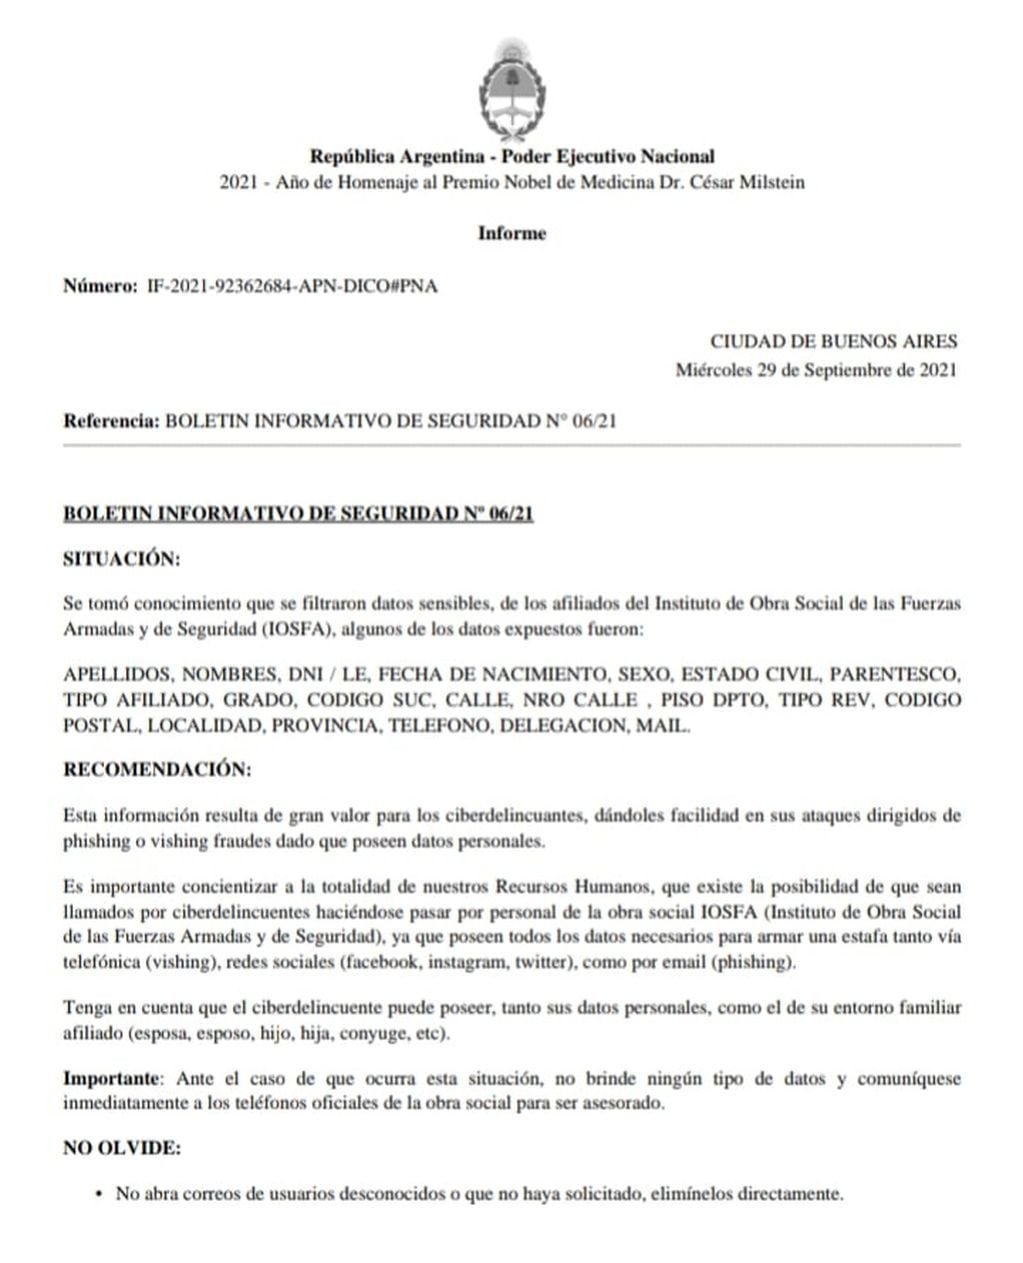 Documento de Seguridad de la Nación Argentina